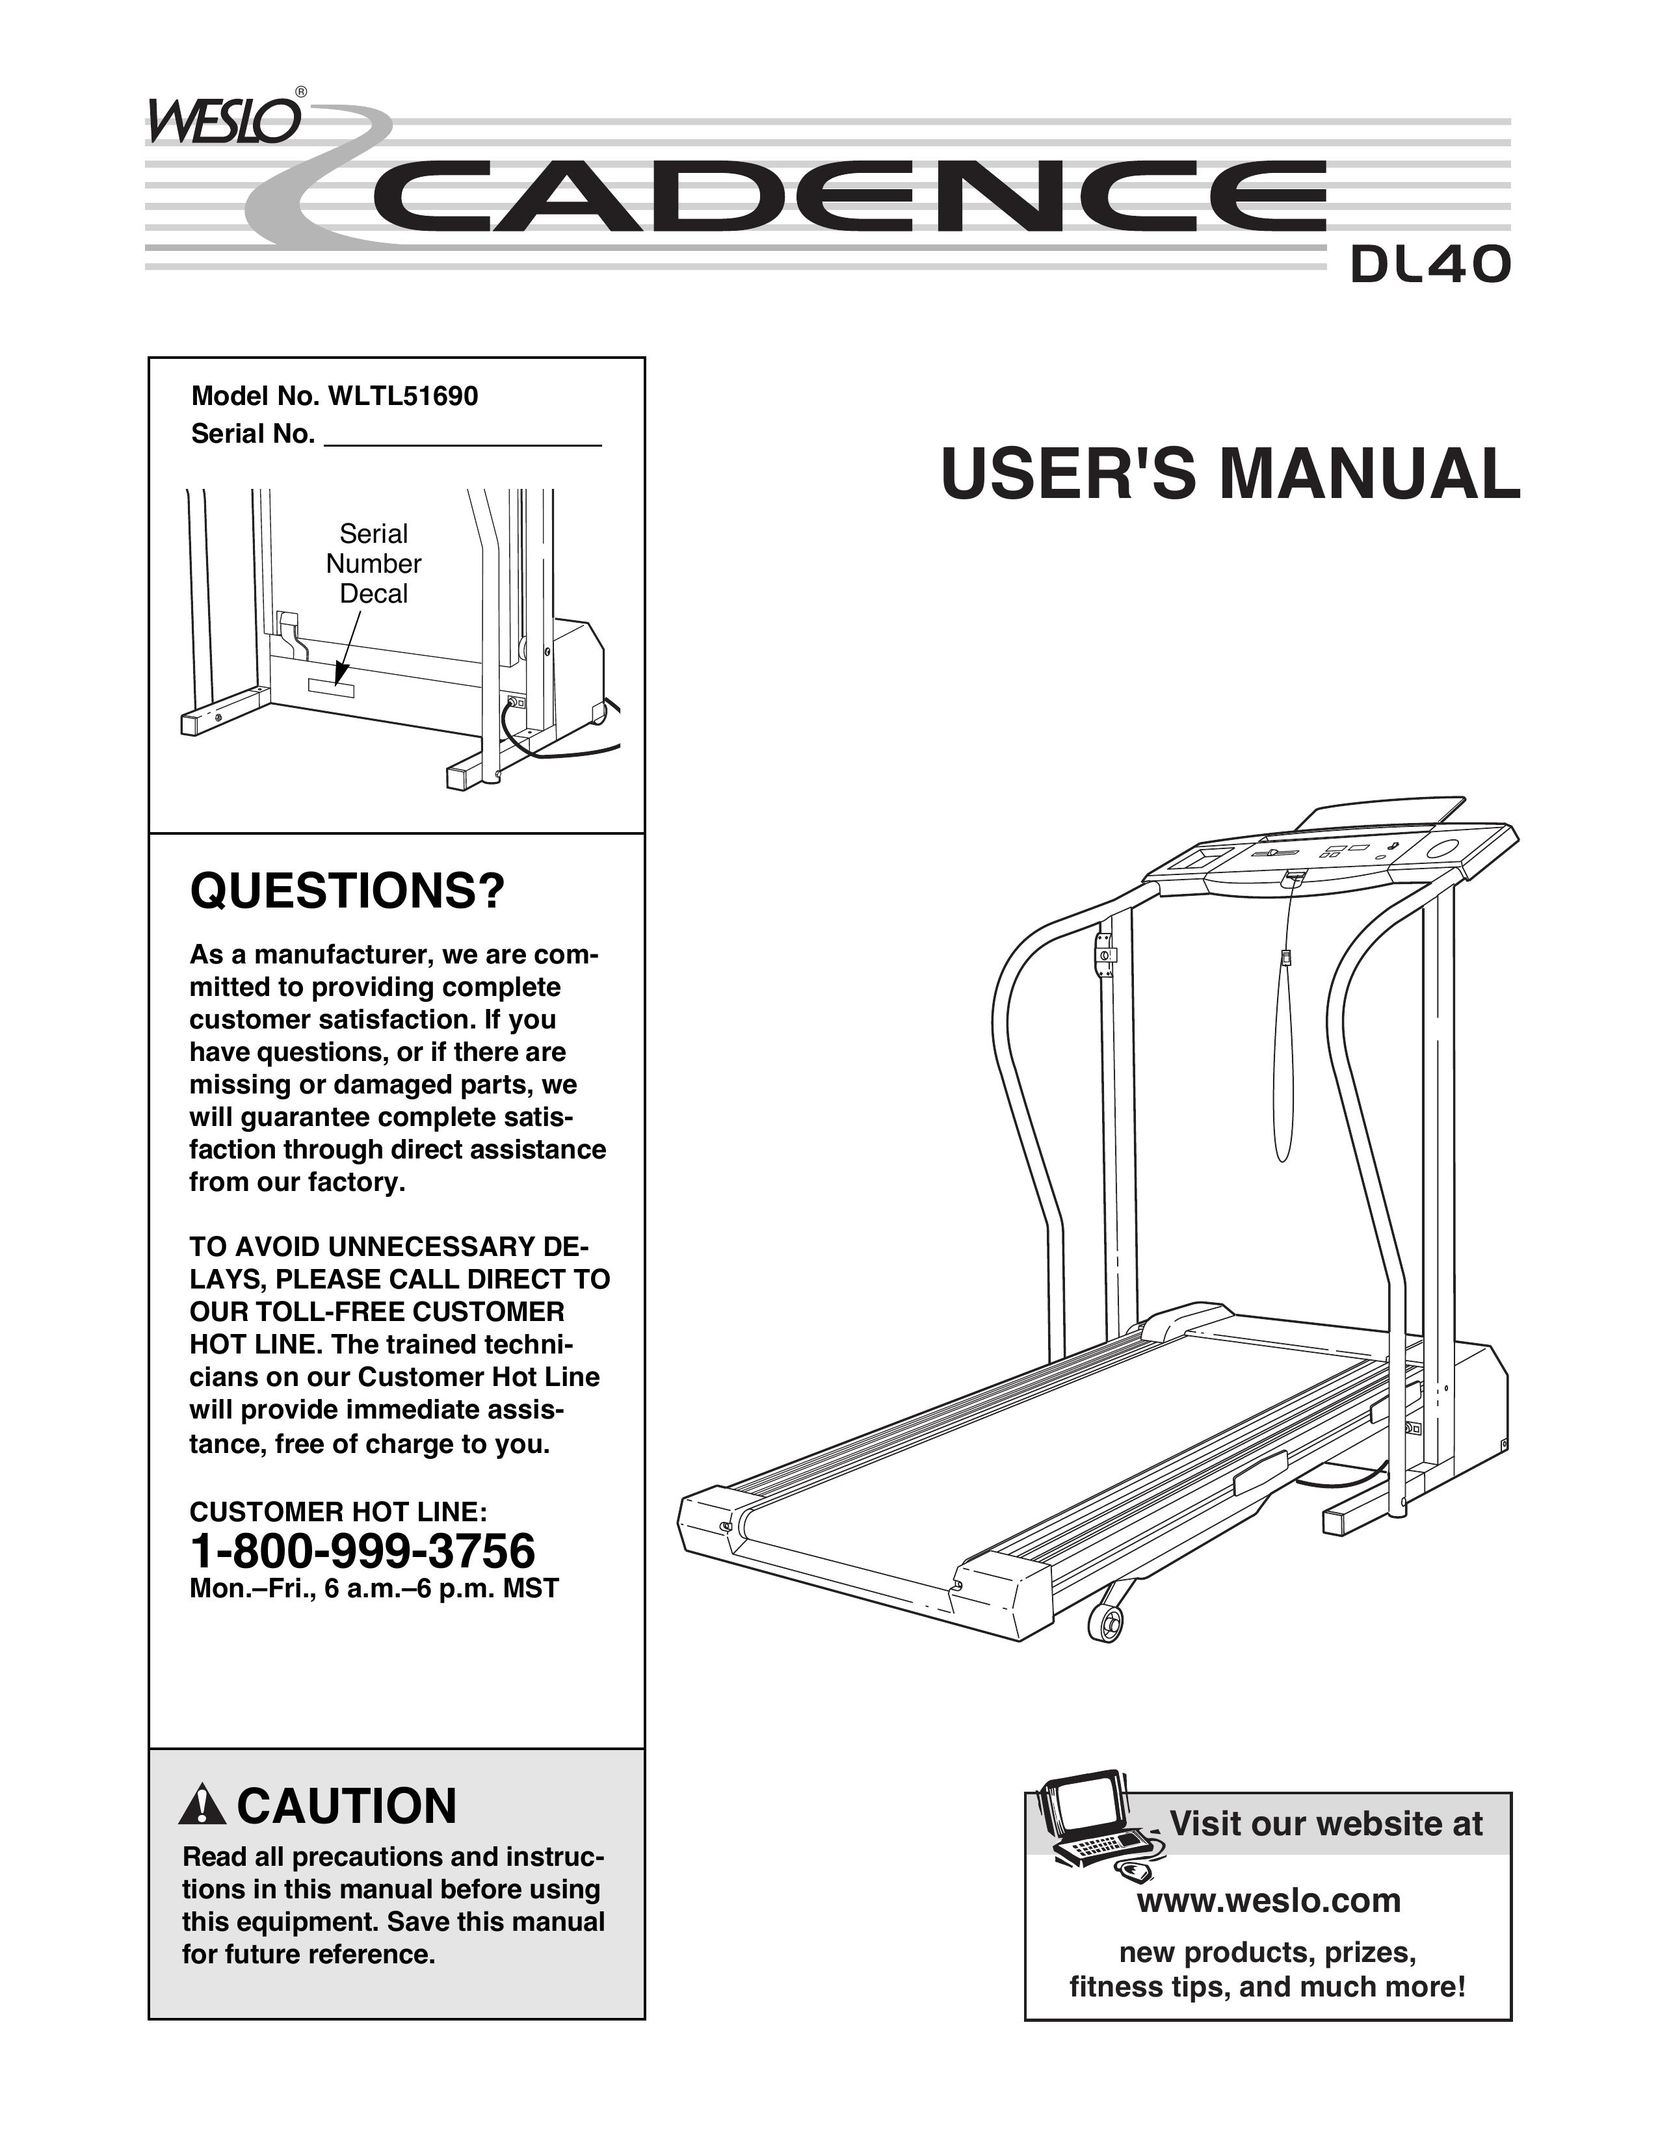 Weslo Cadence DL40 Treadmill User Manual